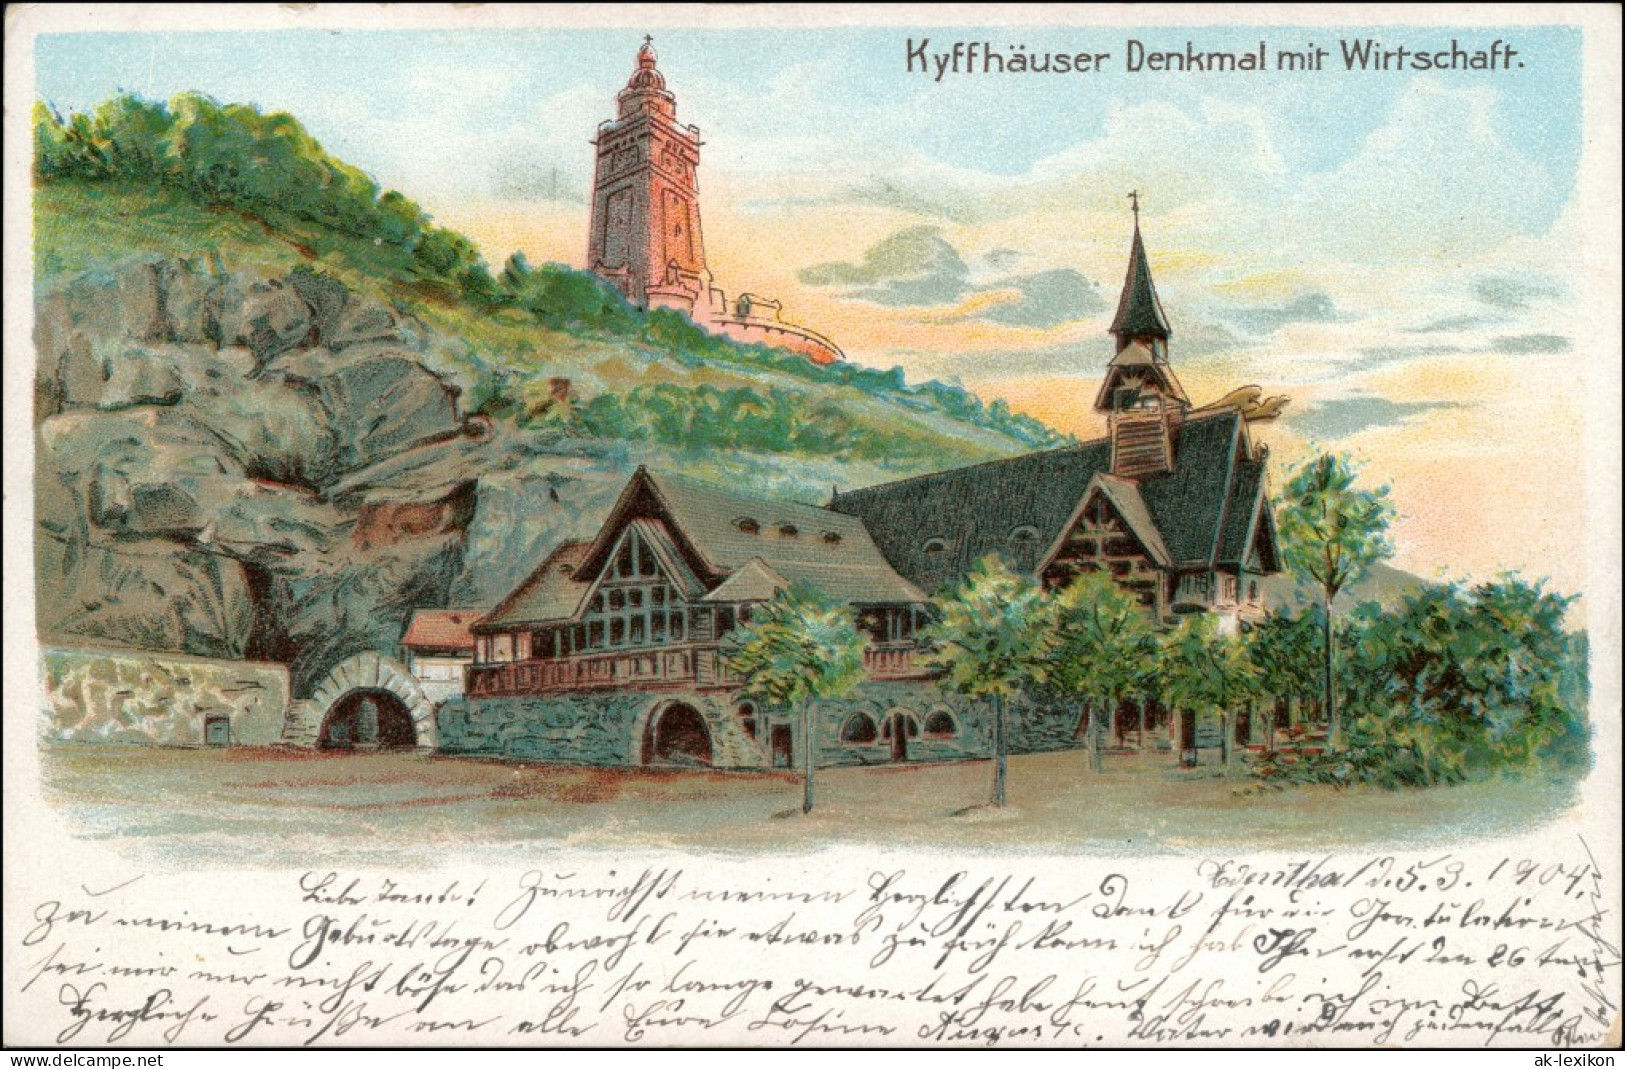 Kelbra (Kyffhäuser) Künstlerlitho: Kyffhäuser Und Wirtschaft 1904  - Kyffhaeuser